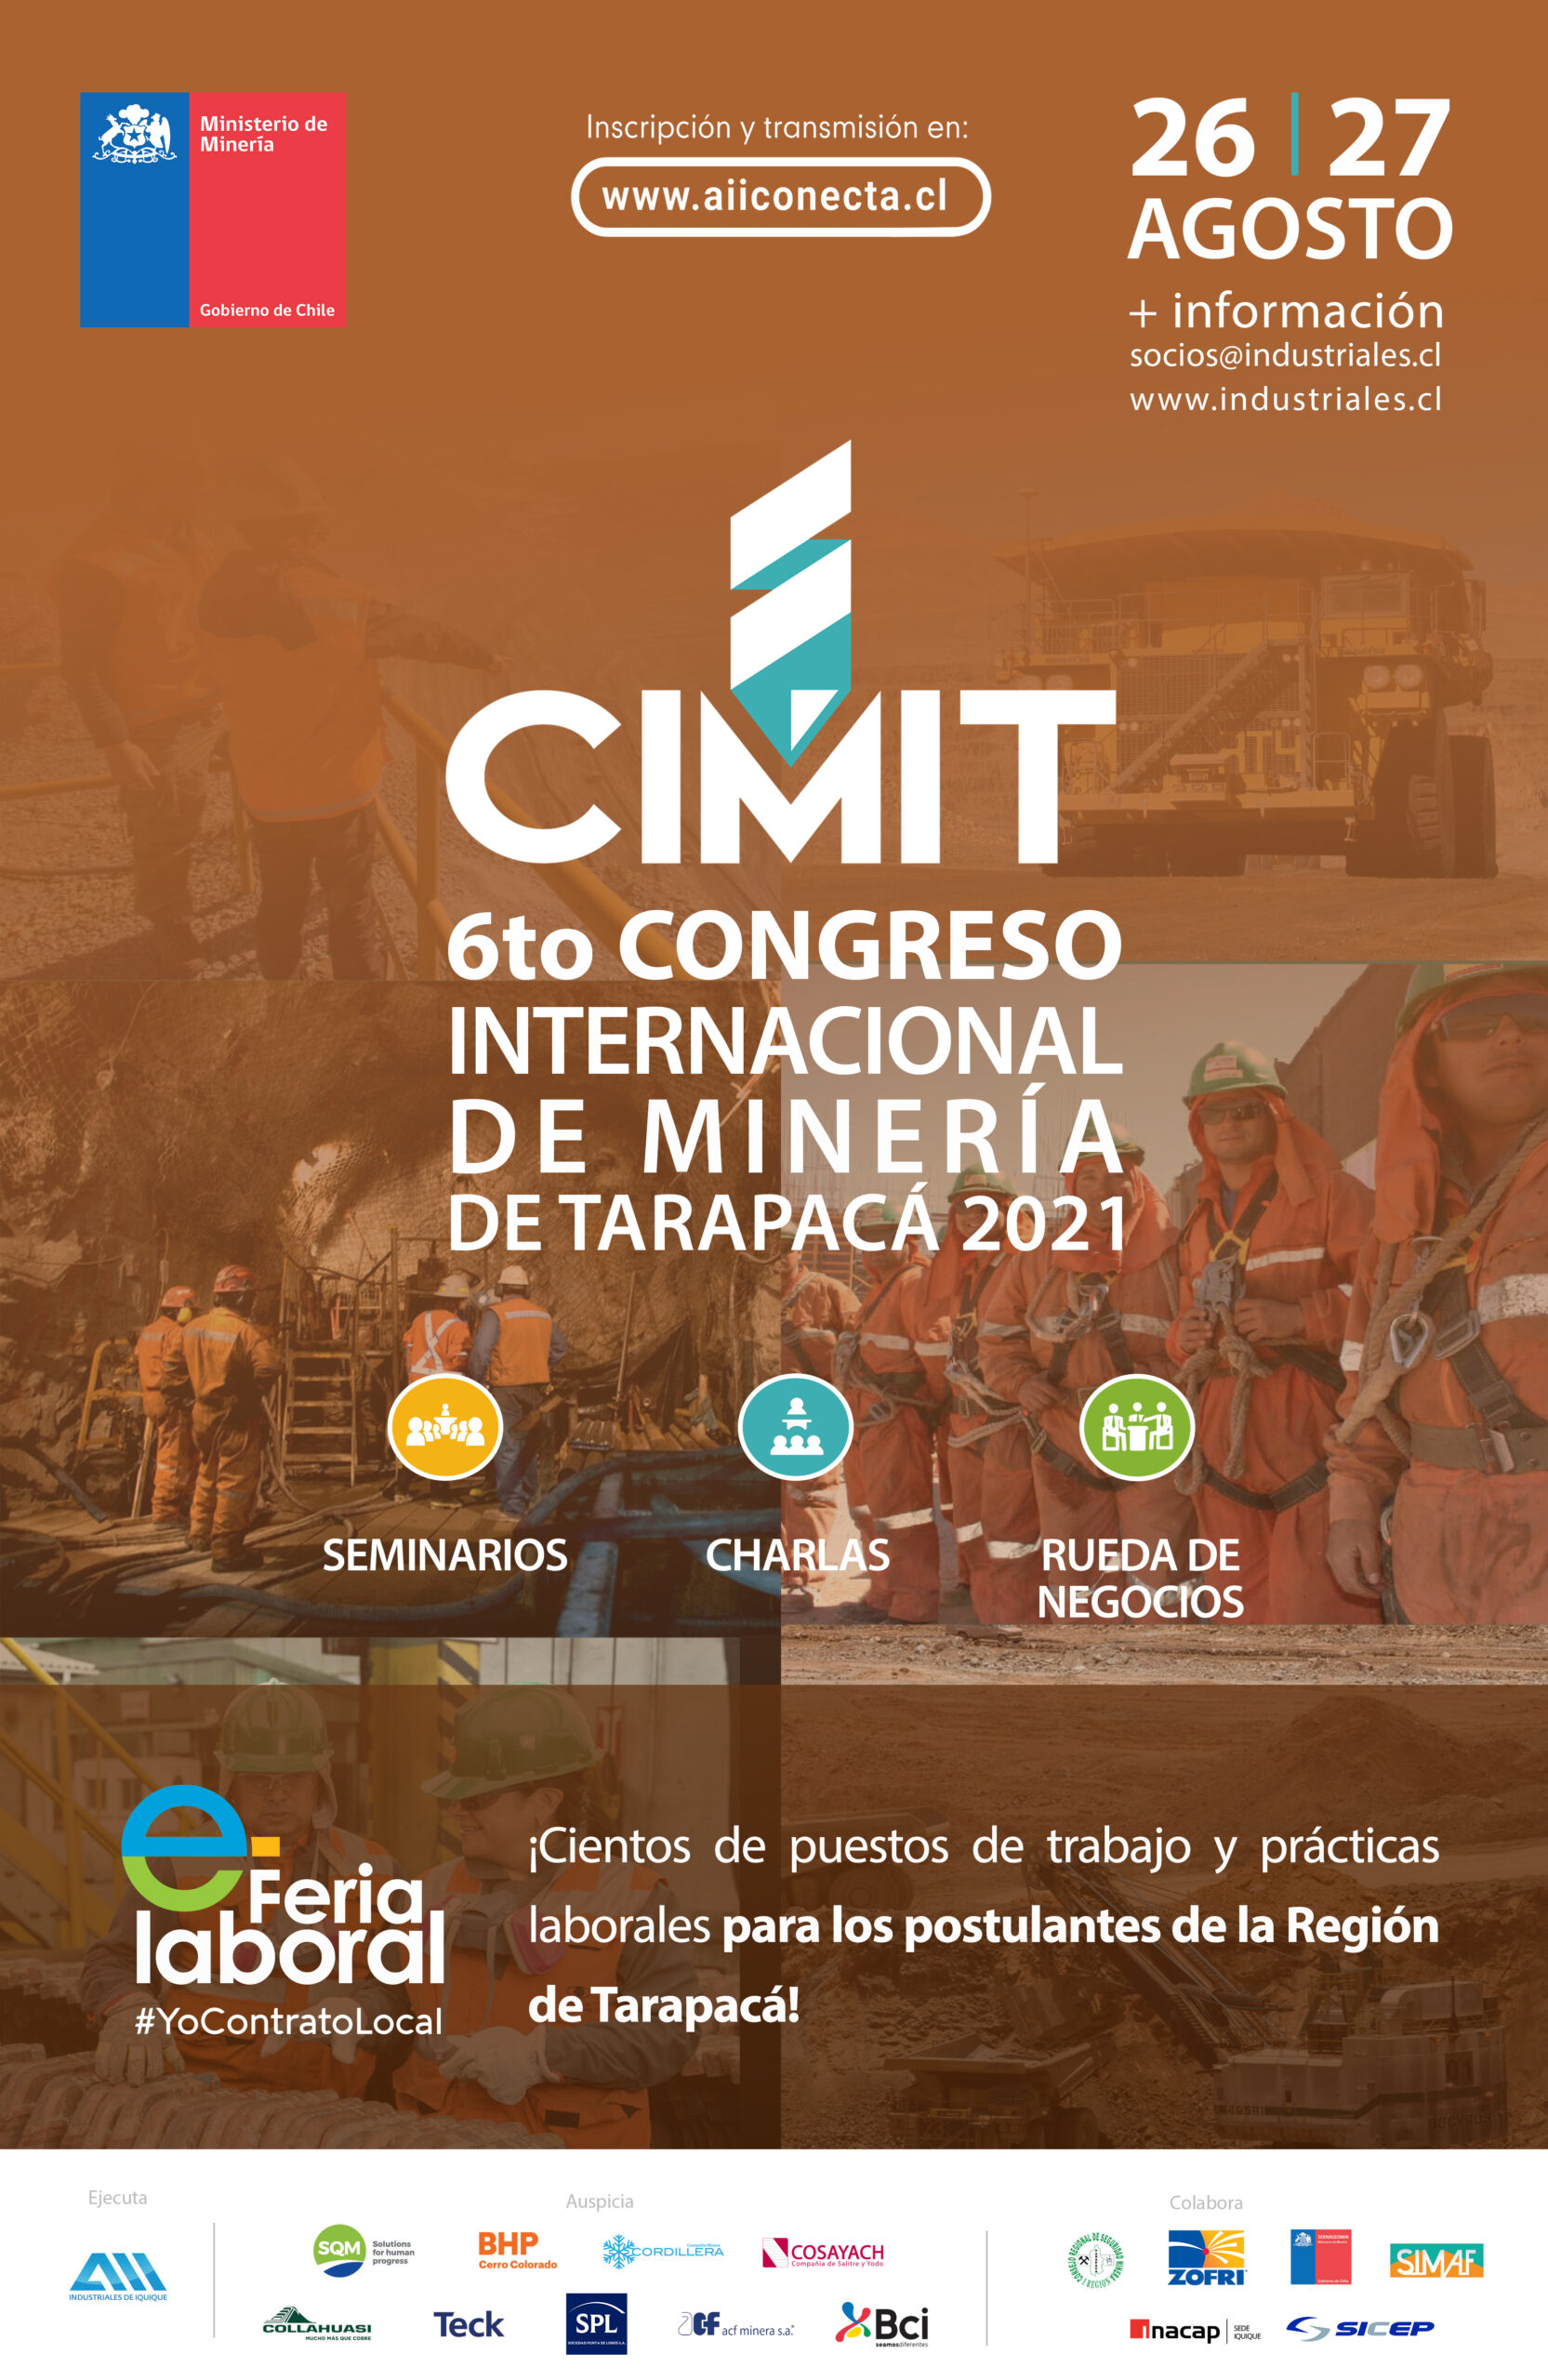 CIMIT 2021 abordará la recuperación económica regional post pandemia